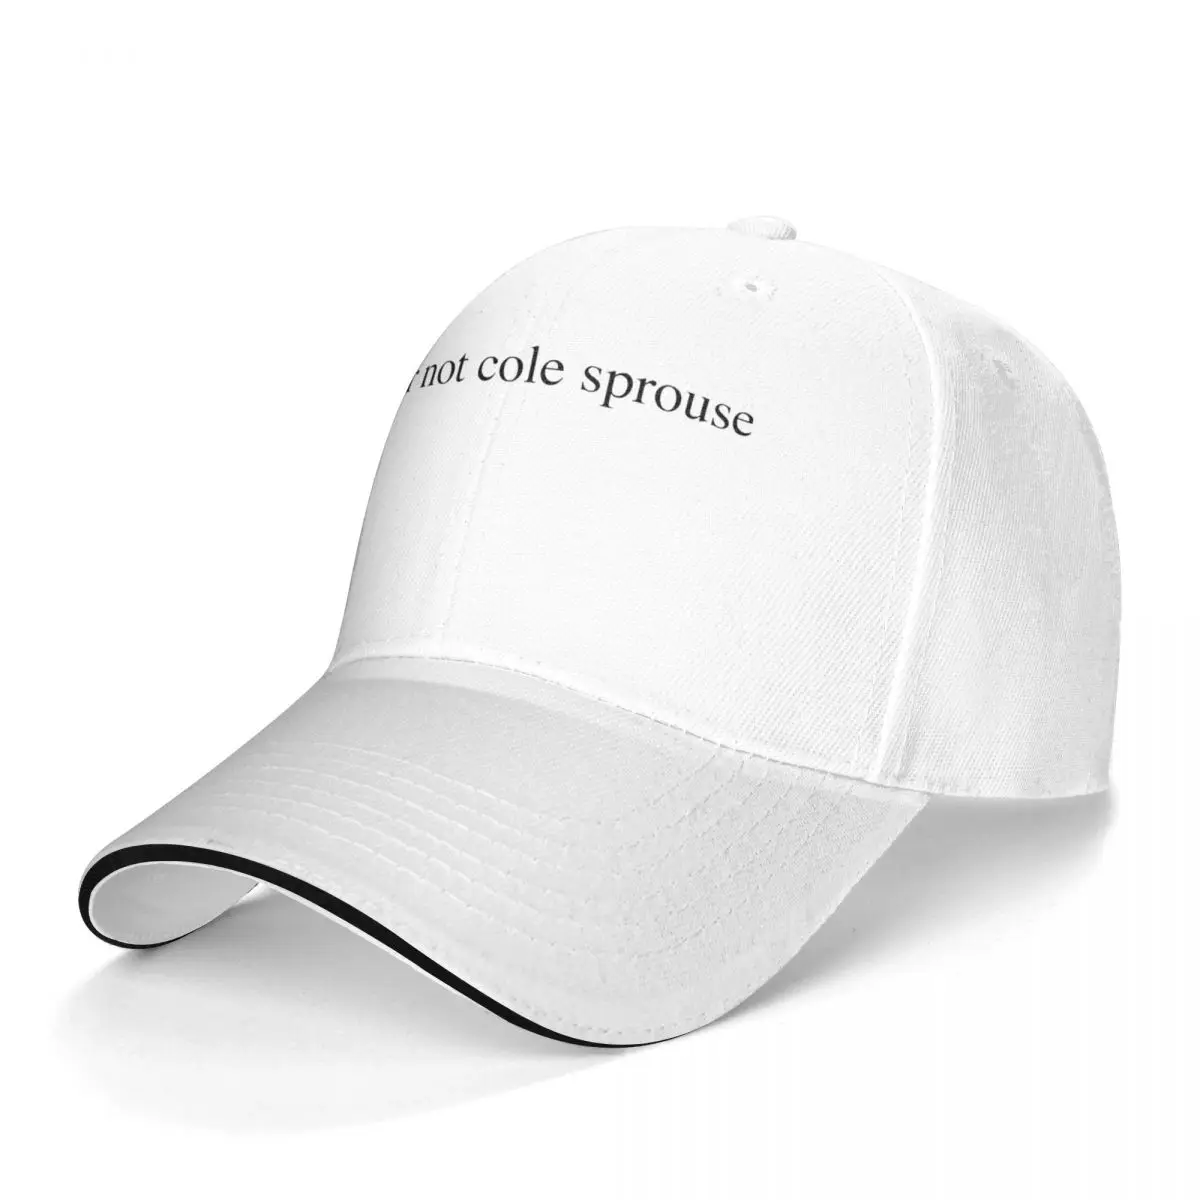 Lol Ur Not Baseball Cap lol ur not cole sprouse University Trucker Hat Adjustable Female Trendy Custom Baseball Caps